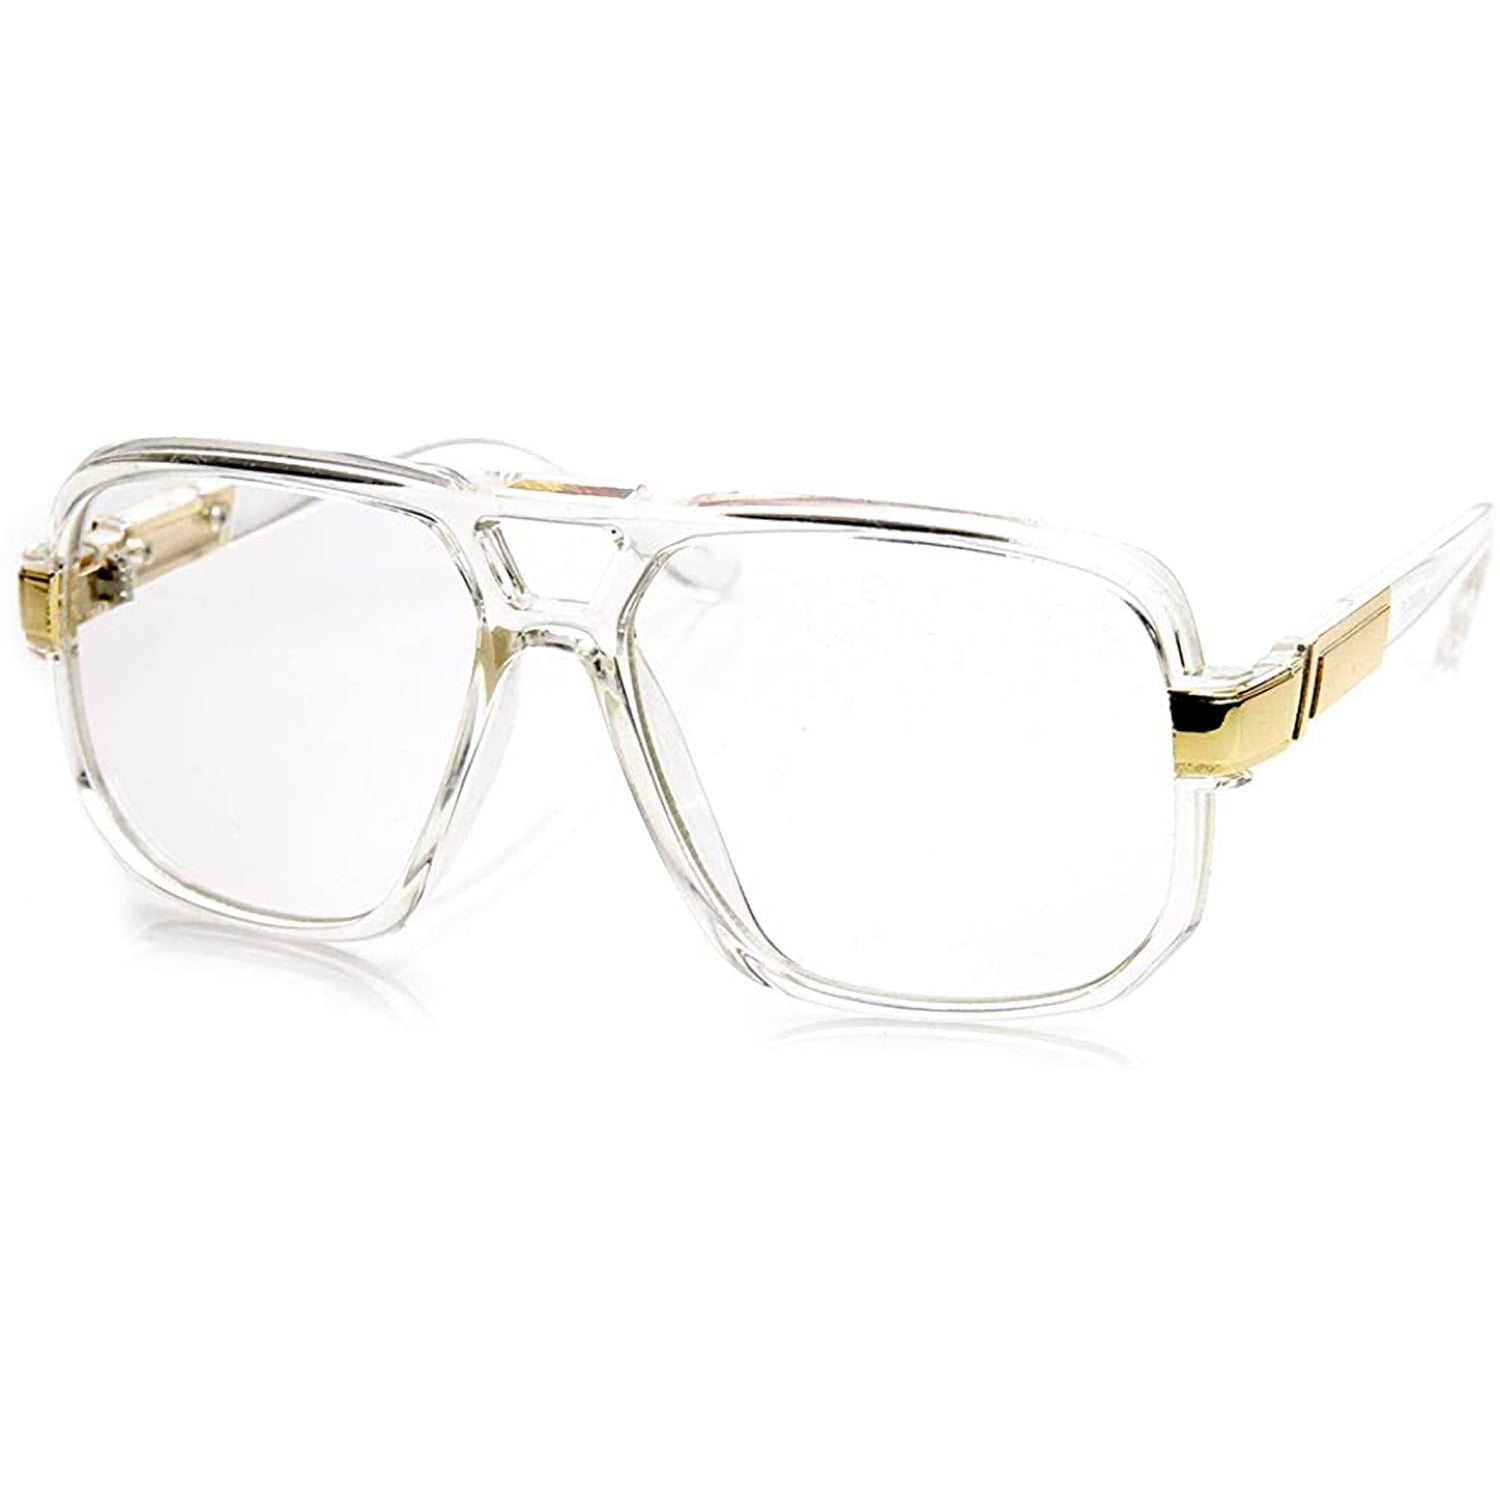 Men Women Slim Glasses Clear Lens Unisex Classic Fashion unisex Style 80" LA 